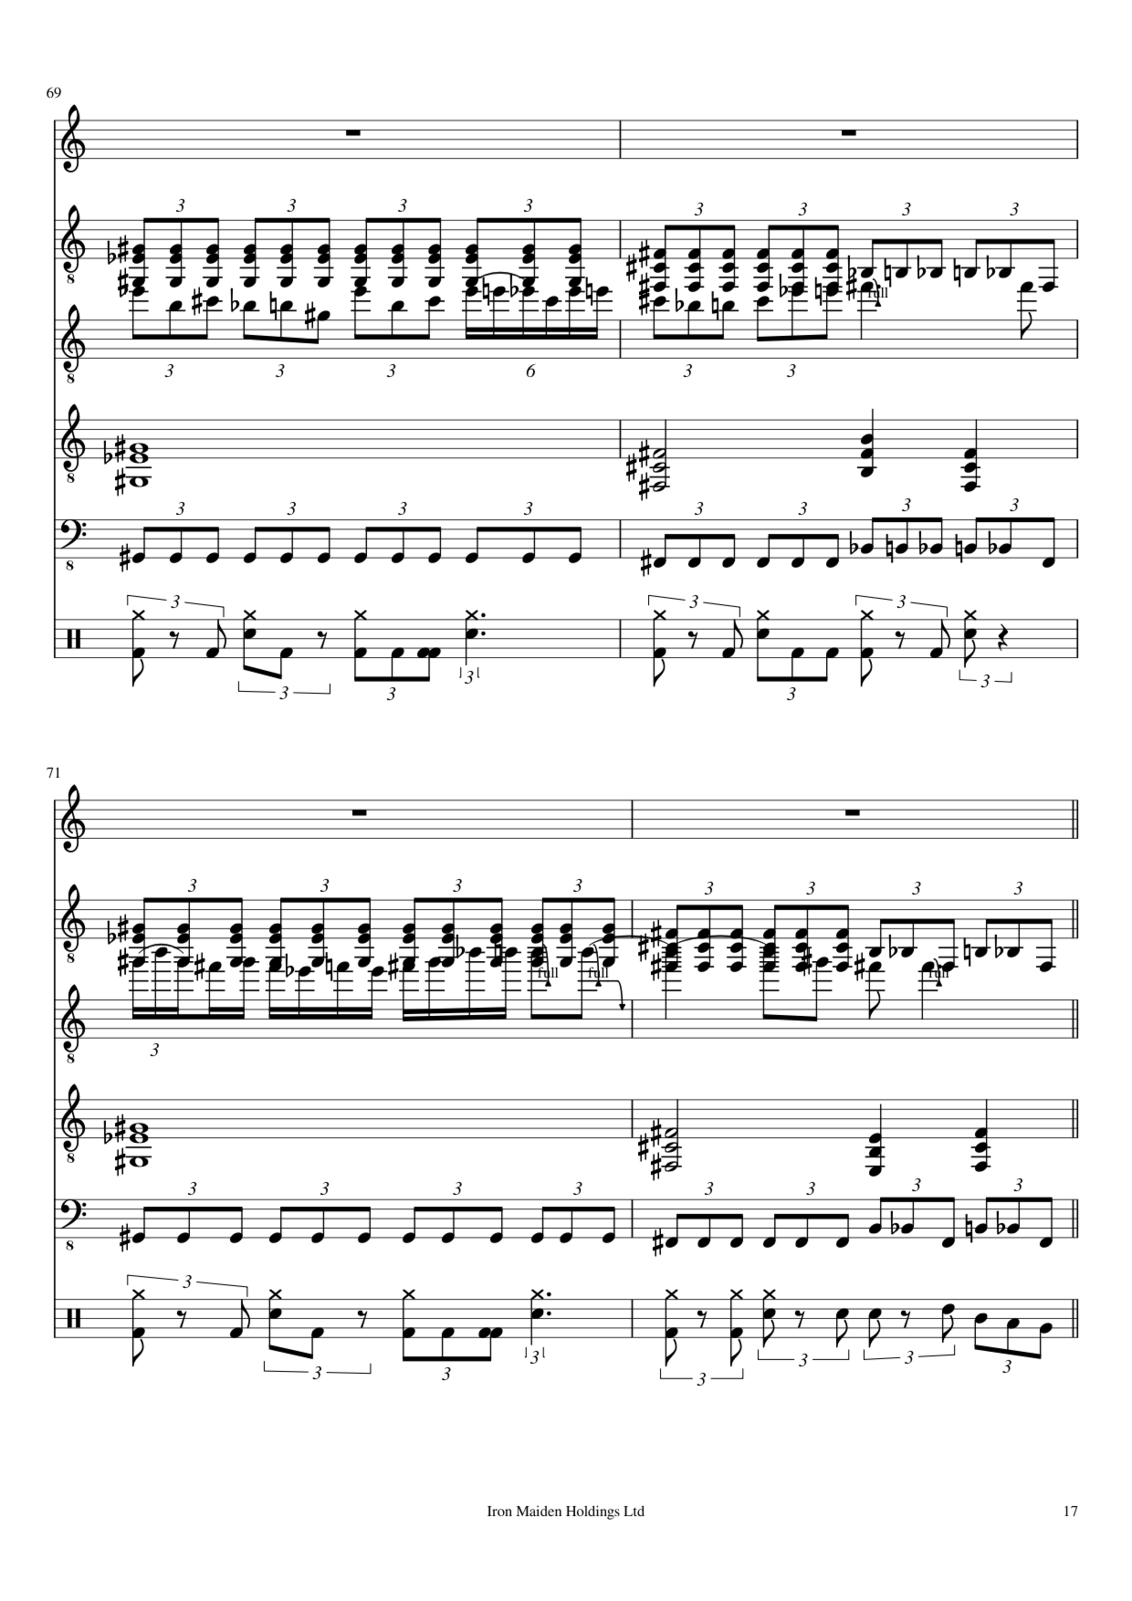 Vospominaniya o byiloy lyubvi slide, Image 18